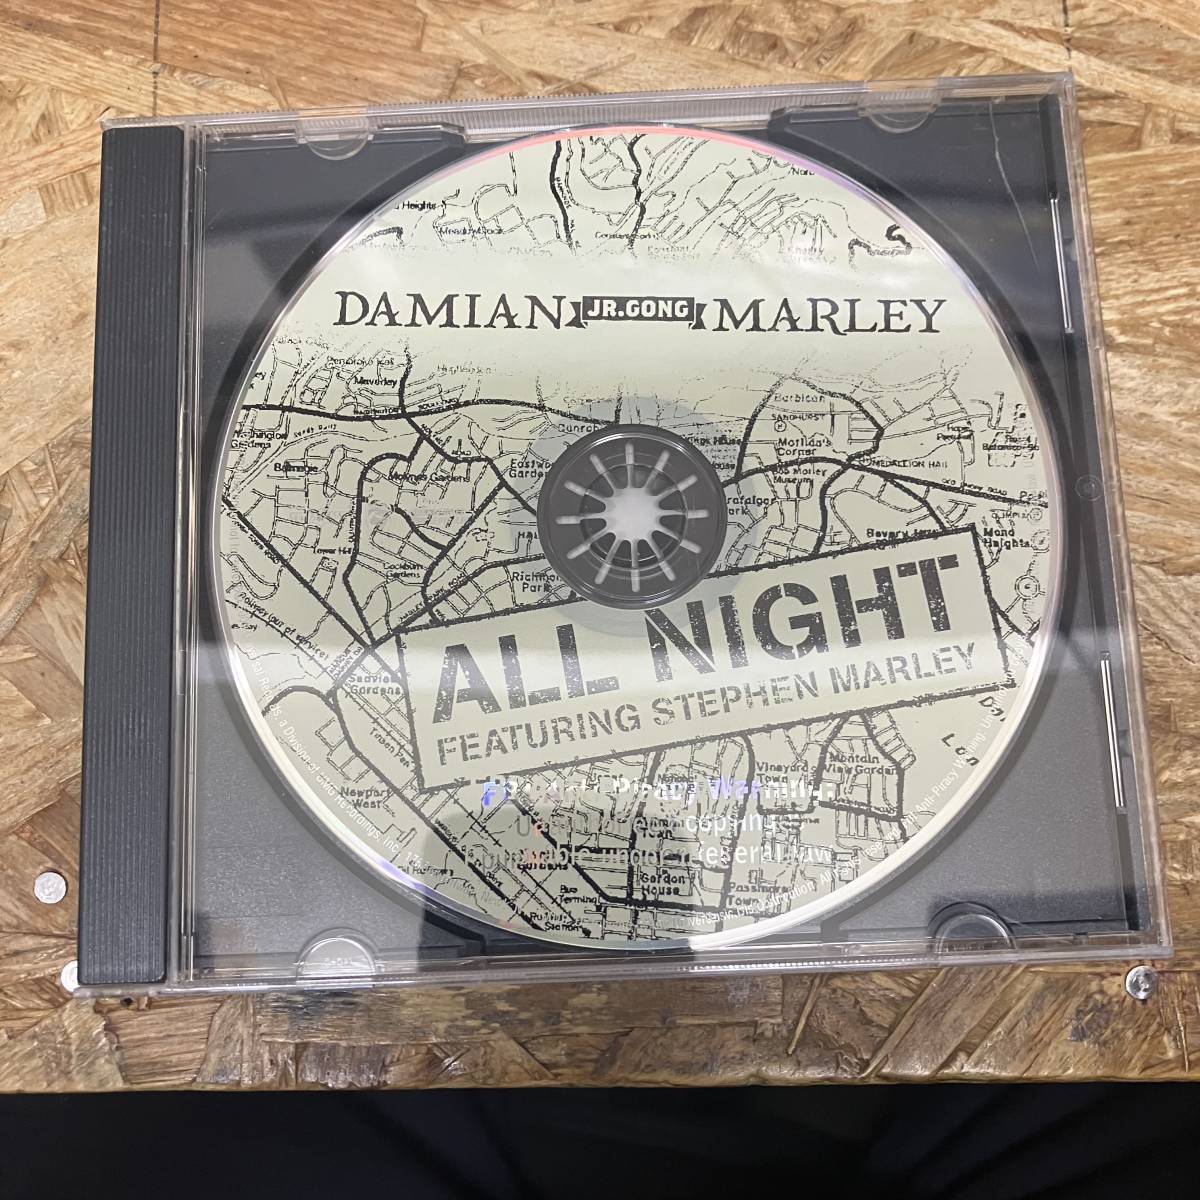 シ● HIPHOP,R&B DAMIAN UR. GONG' MARLEY - ALL NIGHT INST,シングル CD 中古品_画像1